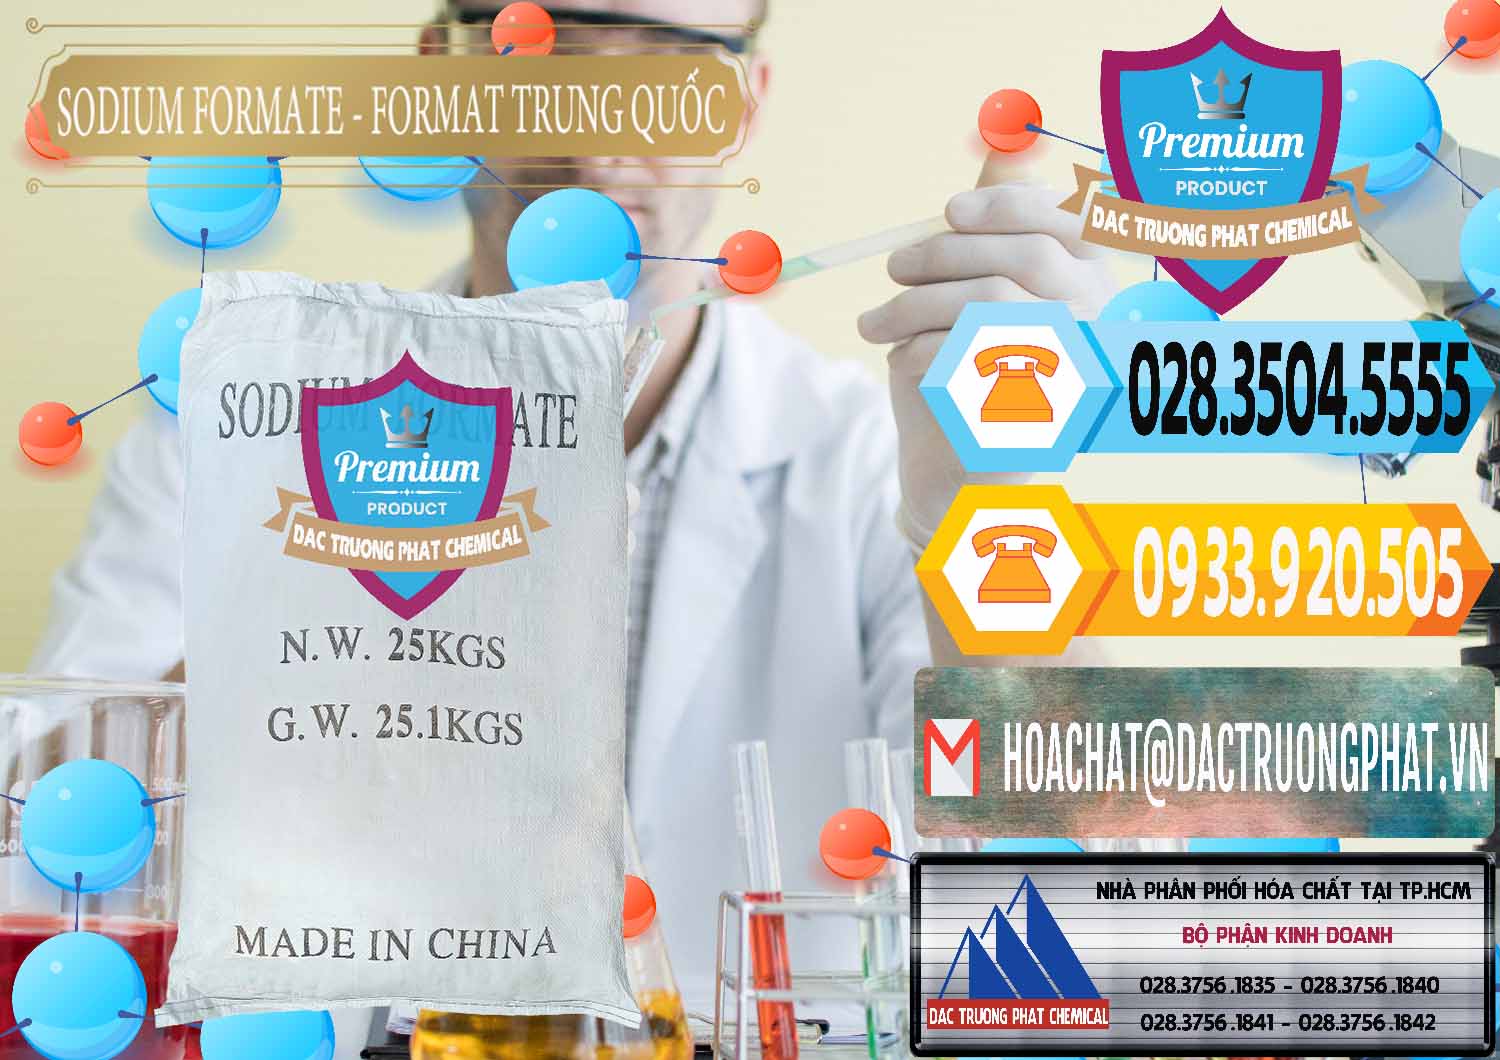 Đơn vị bán & cung ứng Sodium Formate - Natri Format Trung Quốc China - 0142 - Công ty cung cấp và phân phối hóa chất tại TP.HCM - hoachattayrua.net